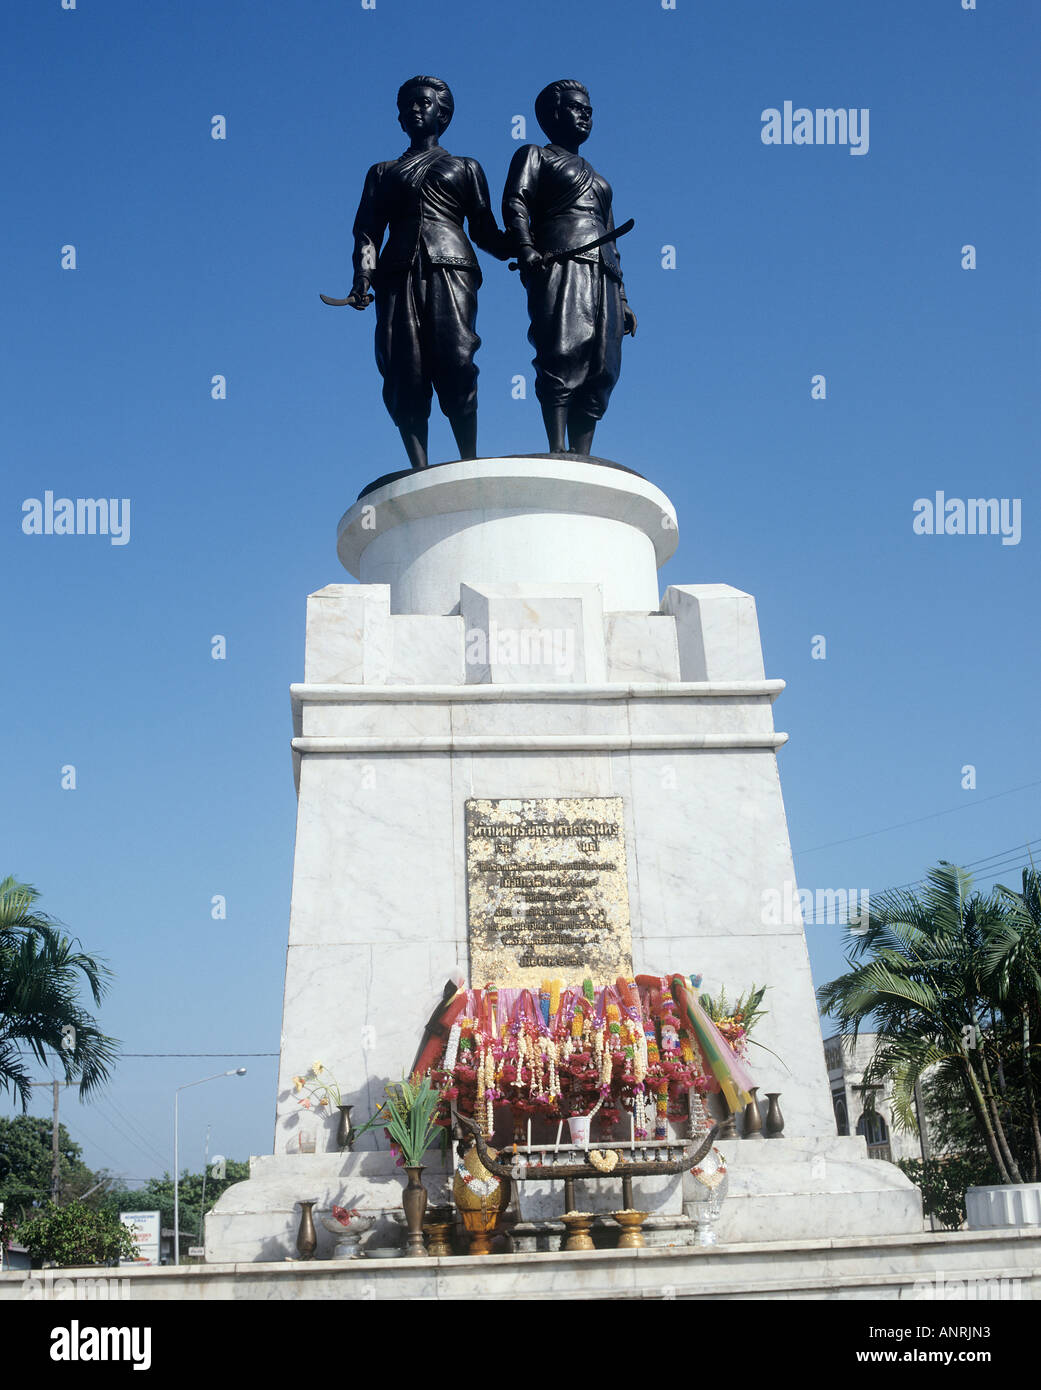 Las heroínas monumento con grandes esculturas de piedra de Thao Thep Krastari y Thao Sri Sunthorn en 1785 salvadores de Thalang desde los Birmanos en Phuket. Foto de stock